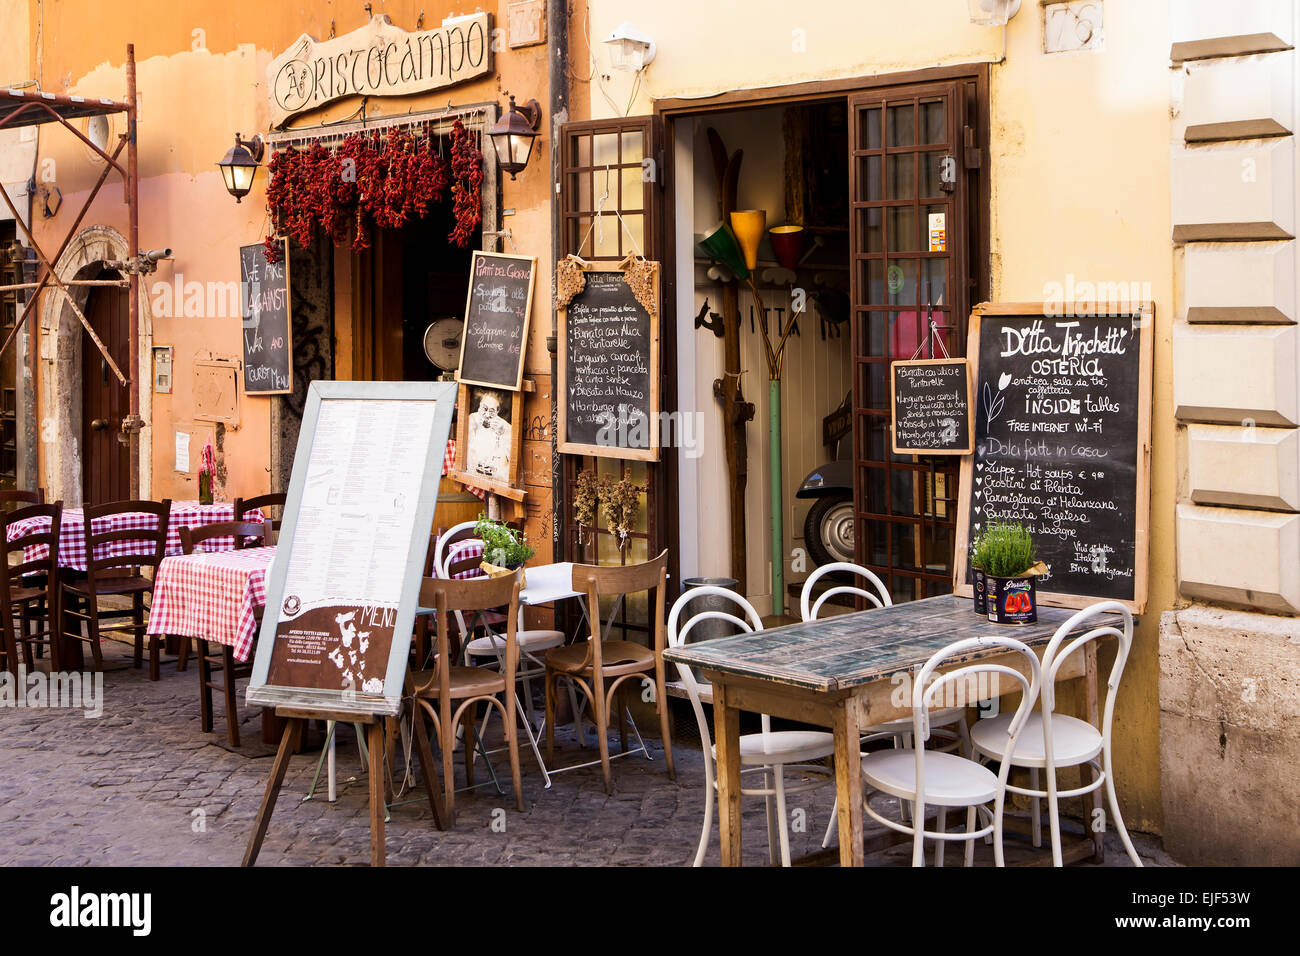 Typisch italienisches Restaurant im Stadtteil Trastevere in Rom Stockfoto